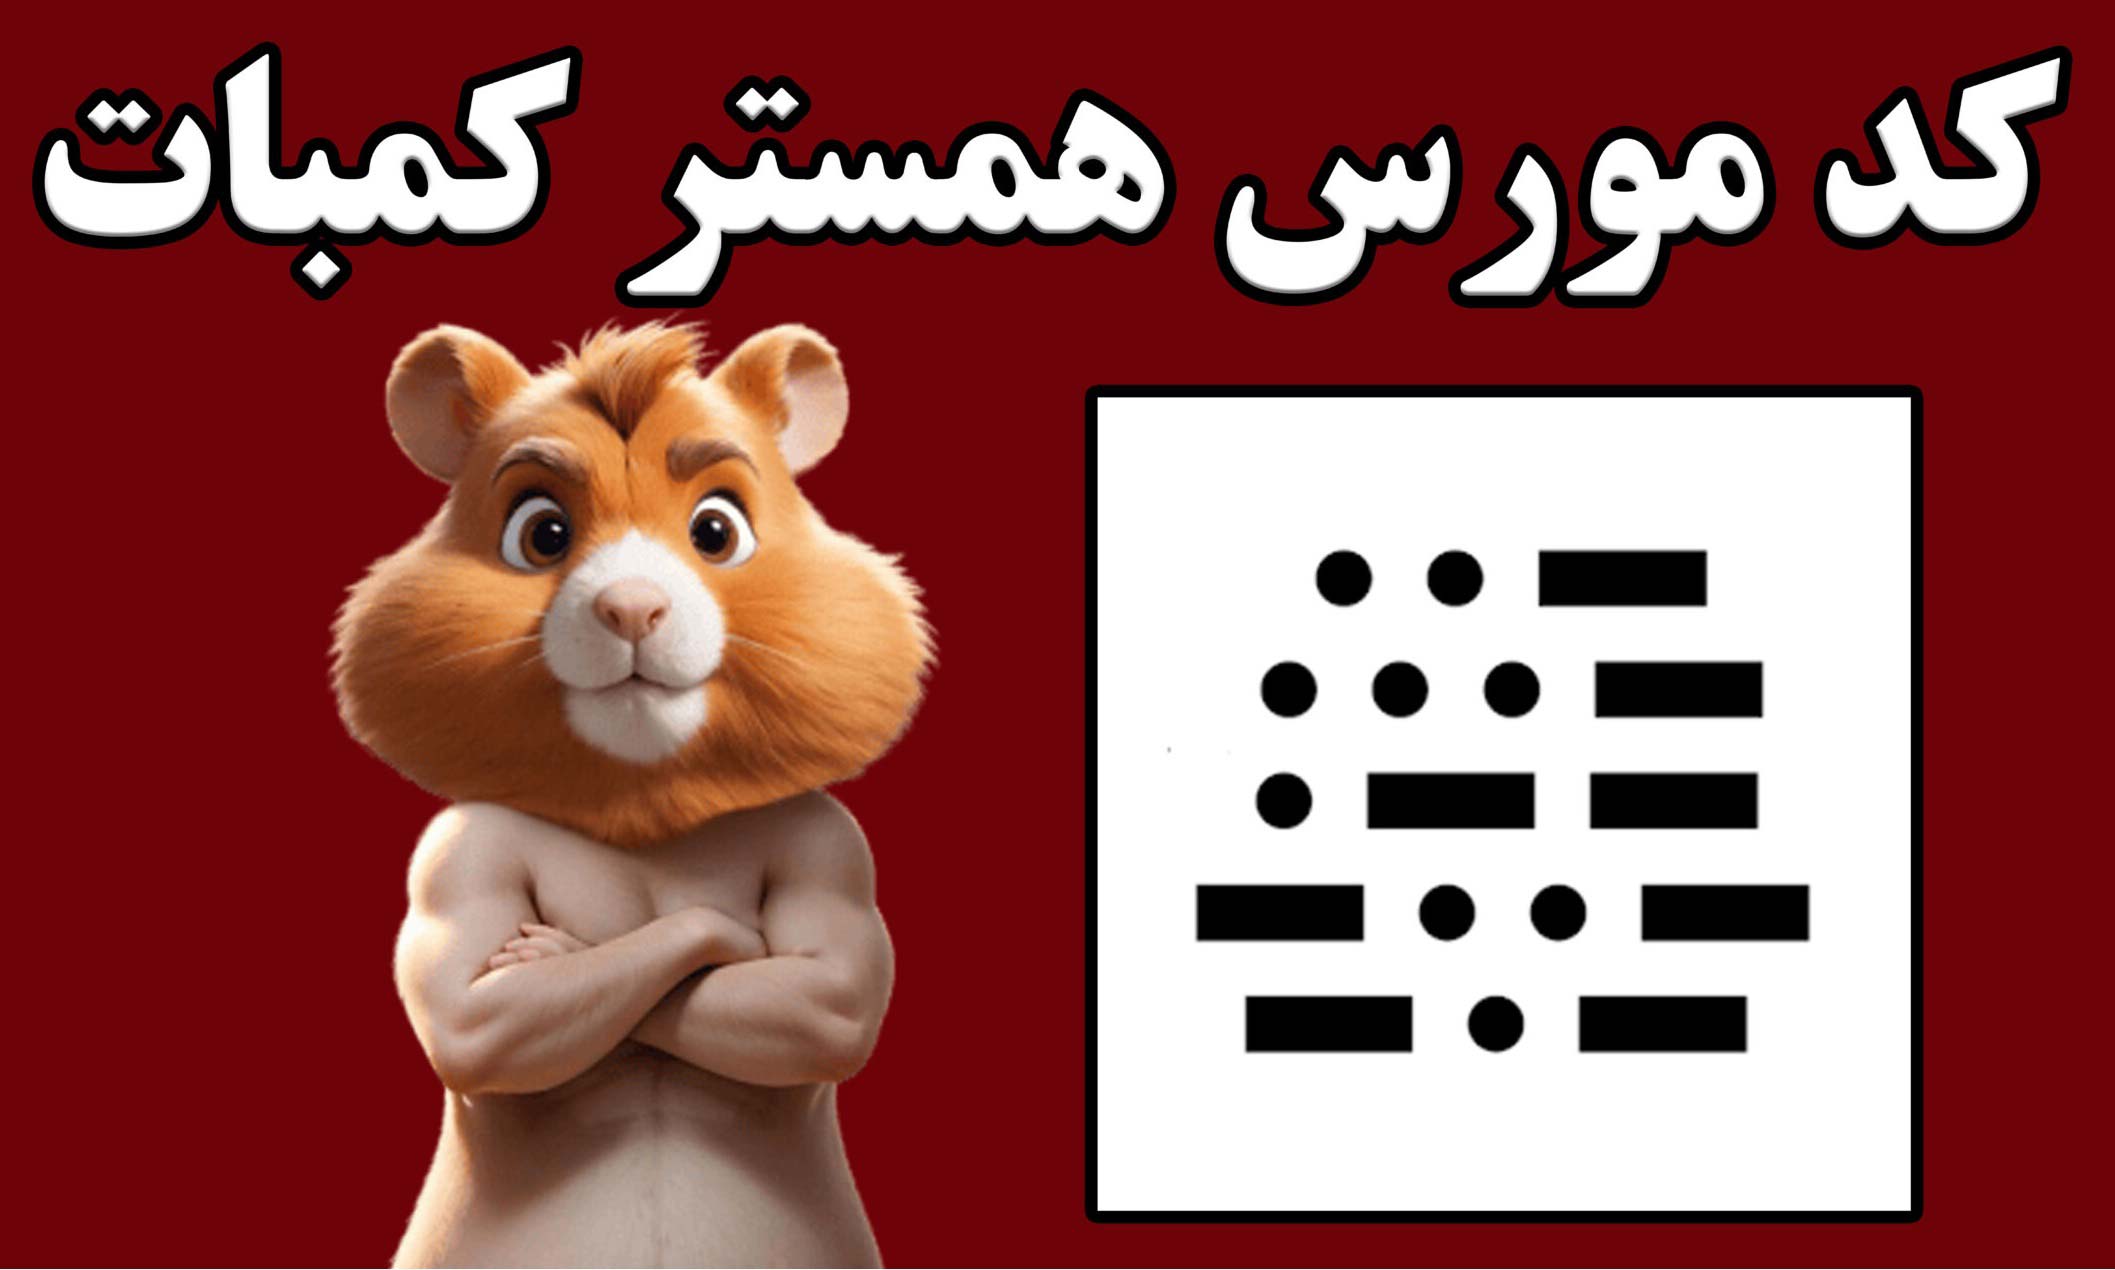 کد مورس همستر کامبت امروز ۲۵ خرداد اعلام شد